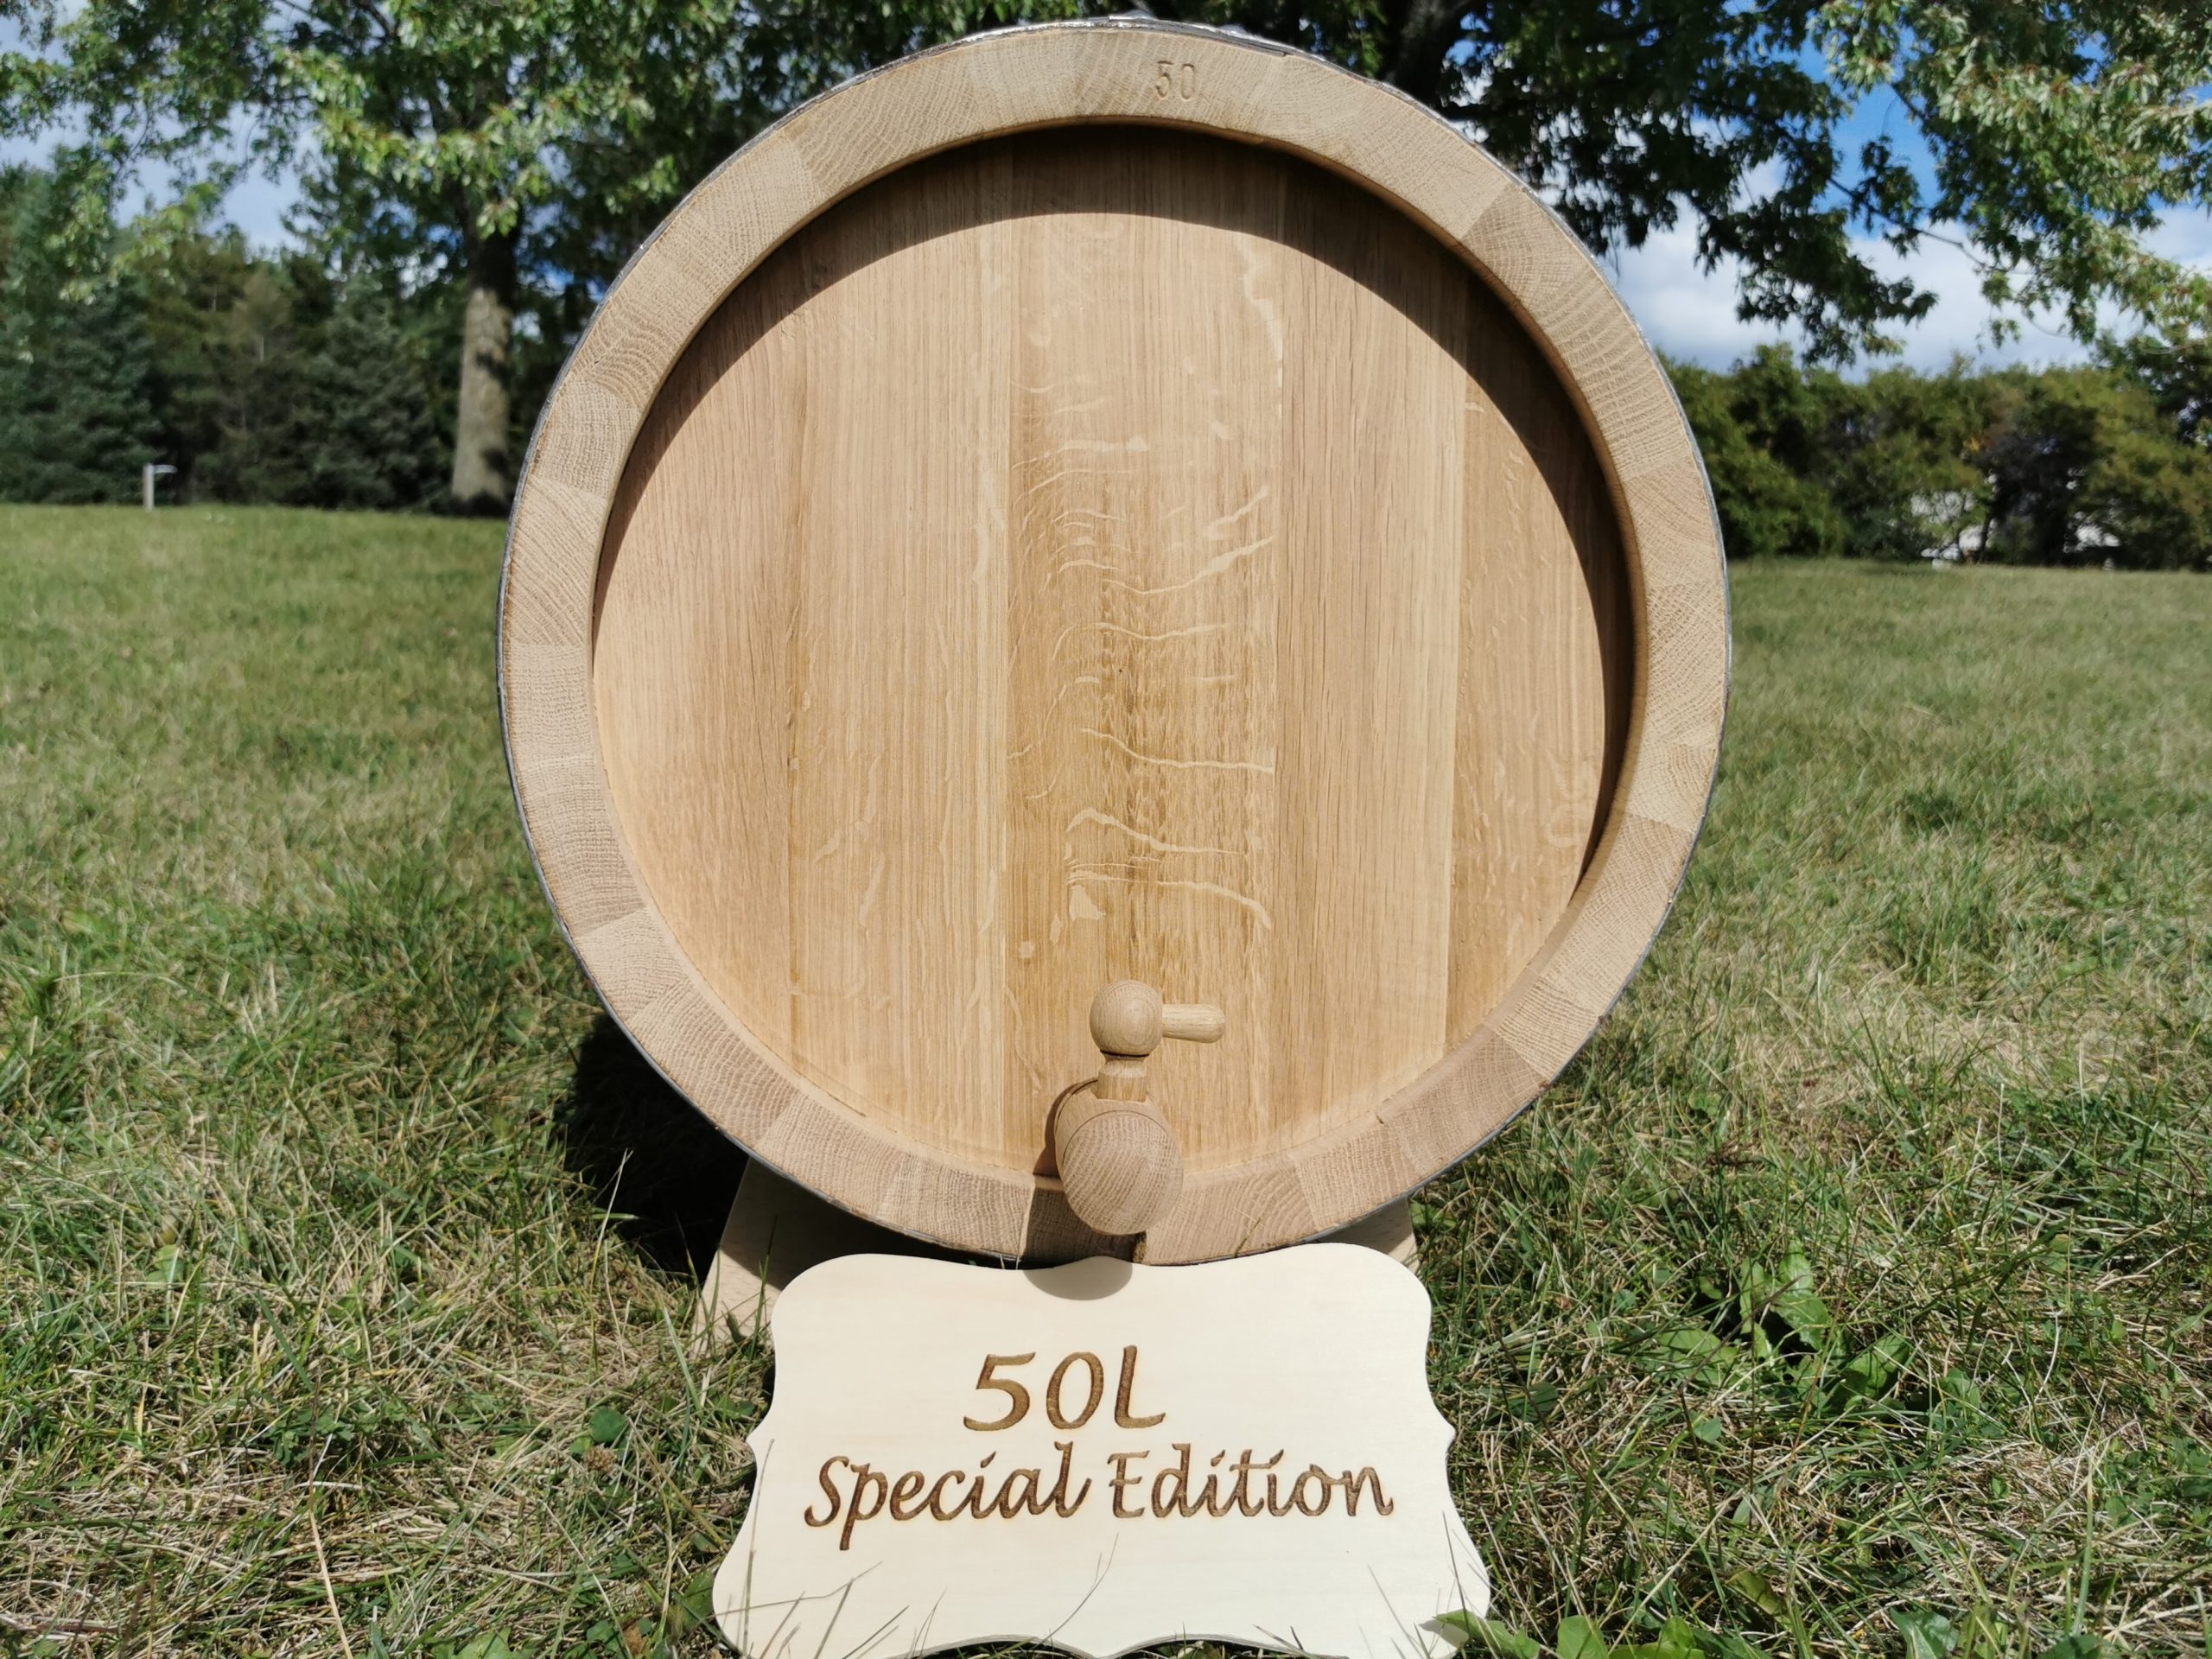 Фото 1 - Special Edition Oak barrel 50L.